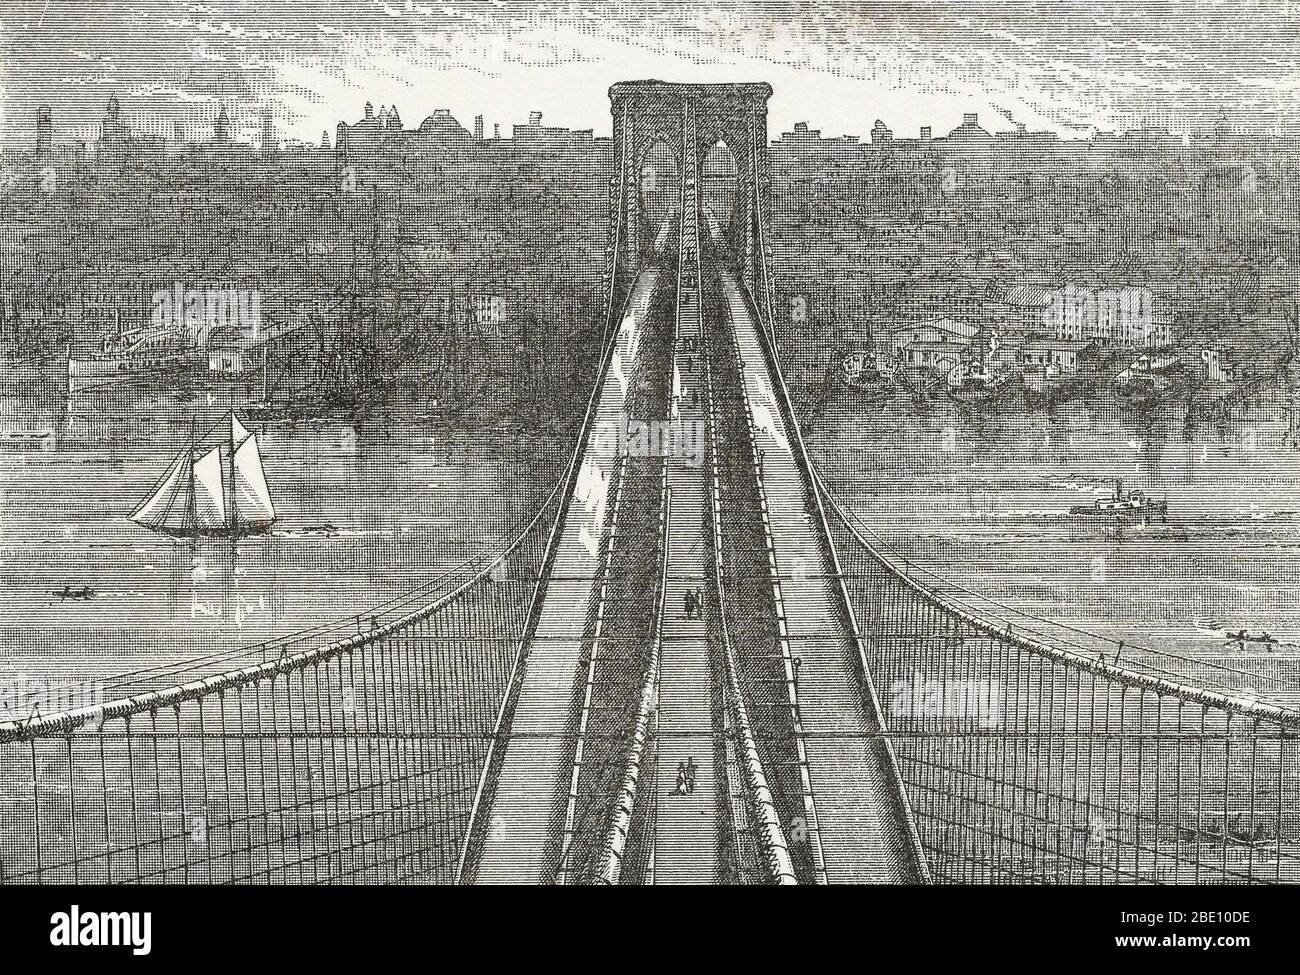 La vue depuis le sommet de la tour de Brooklyn, en regardant le pont de Brooklyn et vers New York. D'une brochure non identifiée sur le pont, 1883. Le pont de Brooklyn est l'un des plus anciens ponts suspendus des États-Unis. Achevé en 1883, il relie les quartiers de Manhattan et de Brooklyn en enjambant la East River. Avec une portée principale de 1 595,5 pieds, il fut le plus long pont suspendu au monde de son ouverture jusqu'en 1903, et le premier pont suspendu en acier. Initialement appelé New York et Brooklyn Bridge et East River Bridge, il était officiellement nam Banque D'Images